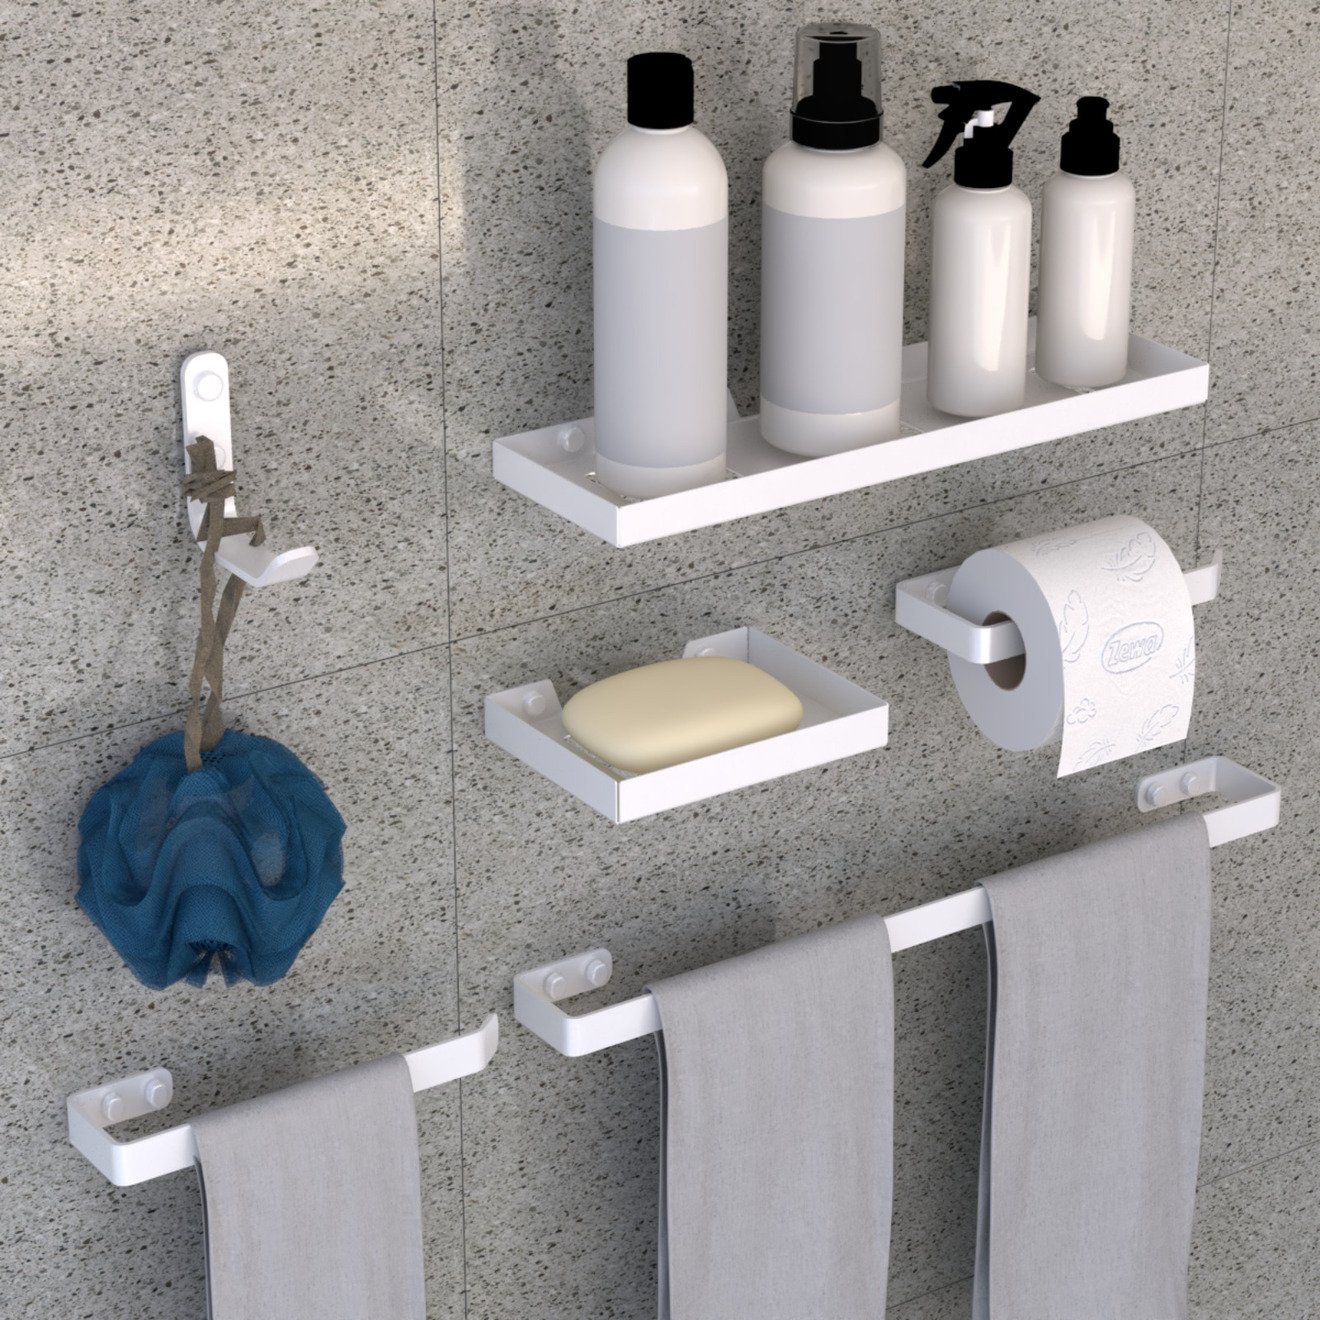 Kit Acessórios Banheiro 6 Peças Luxo Quadrado:branco - 1